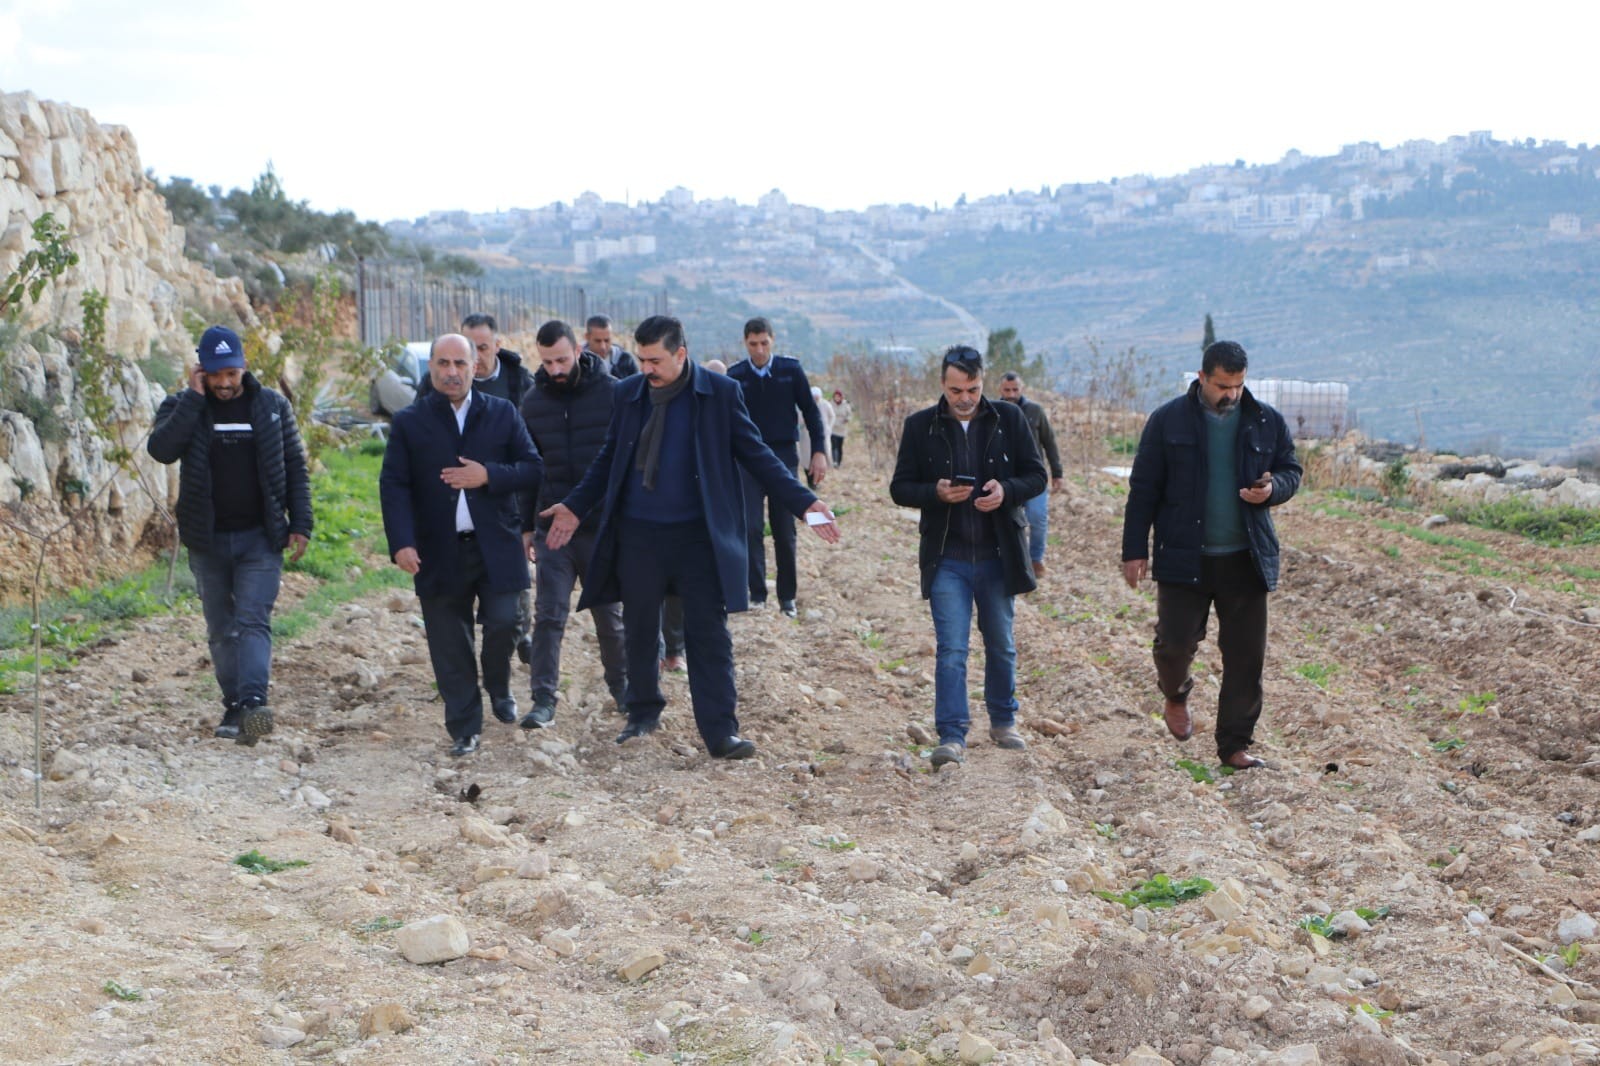 وزير الزراعة ووزير القدس يتفقدان أحوال القطاع الزراعي في قرى شمال غرب القدس  1.jpg